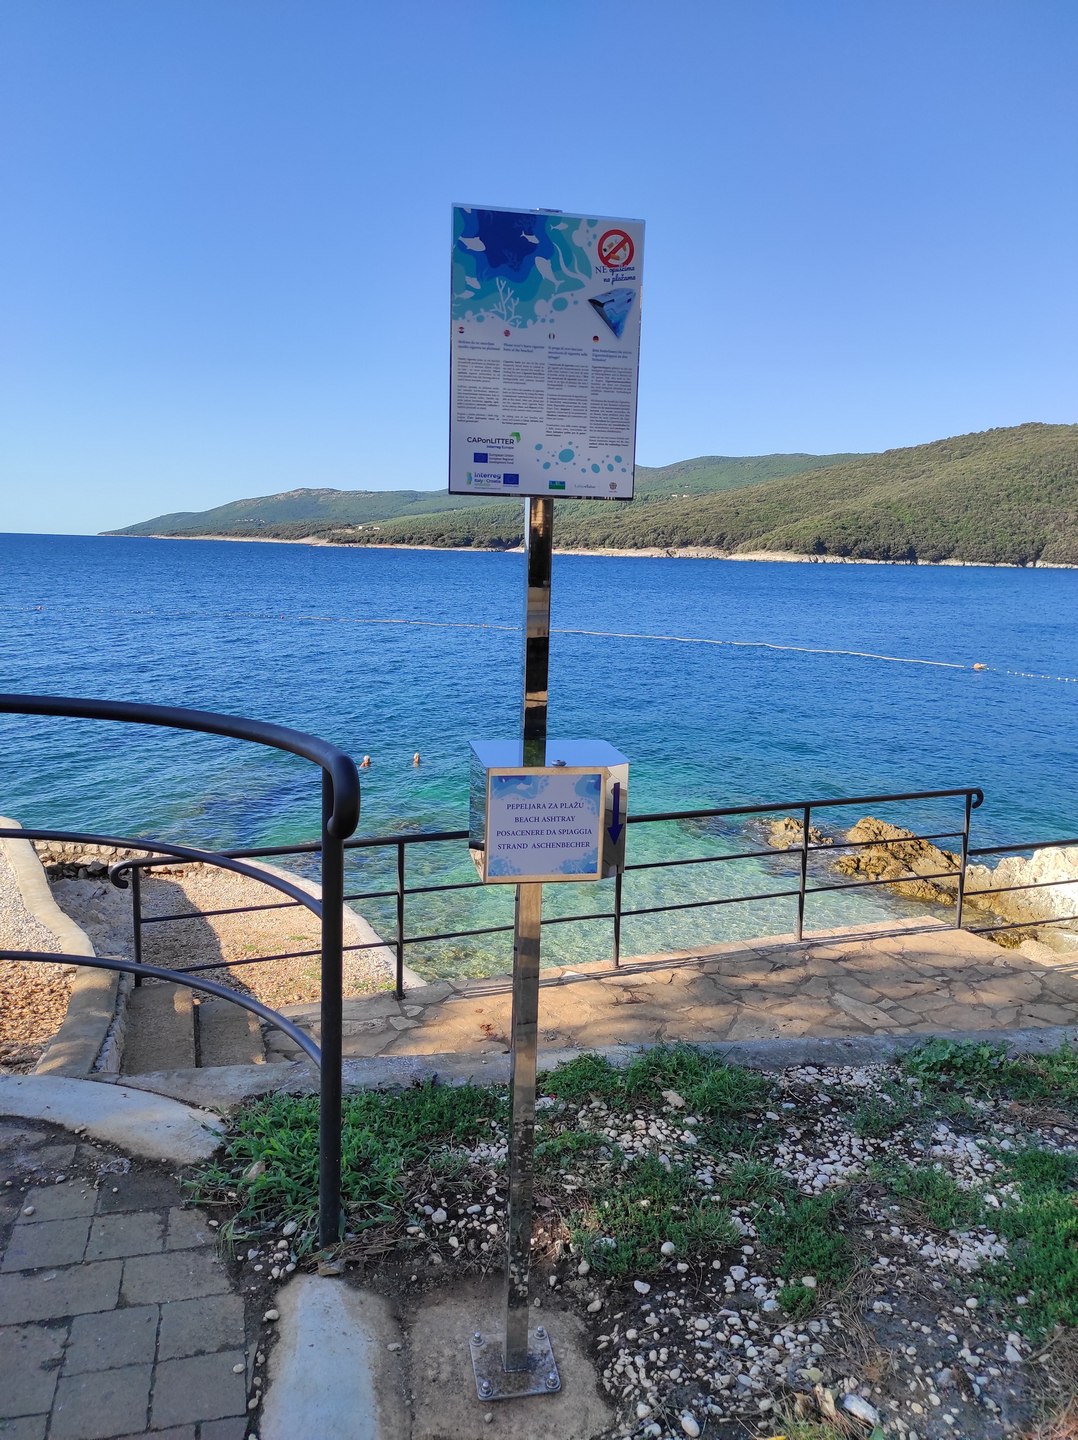 Free-to-use ashtrays on Istrian beaches